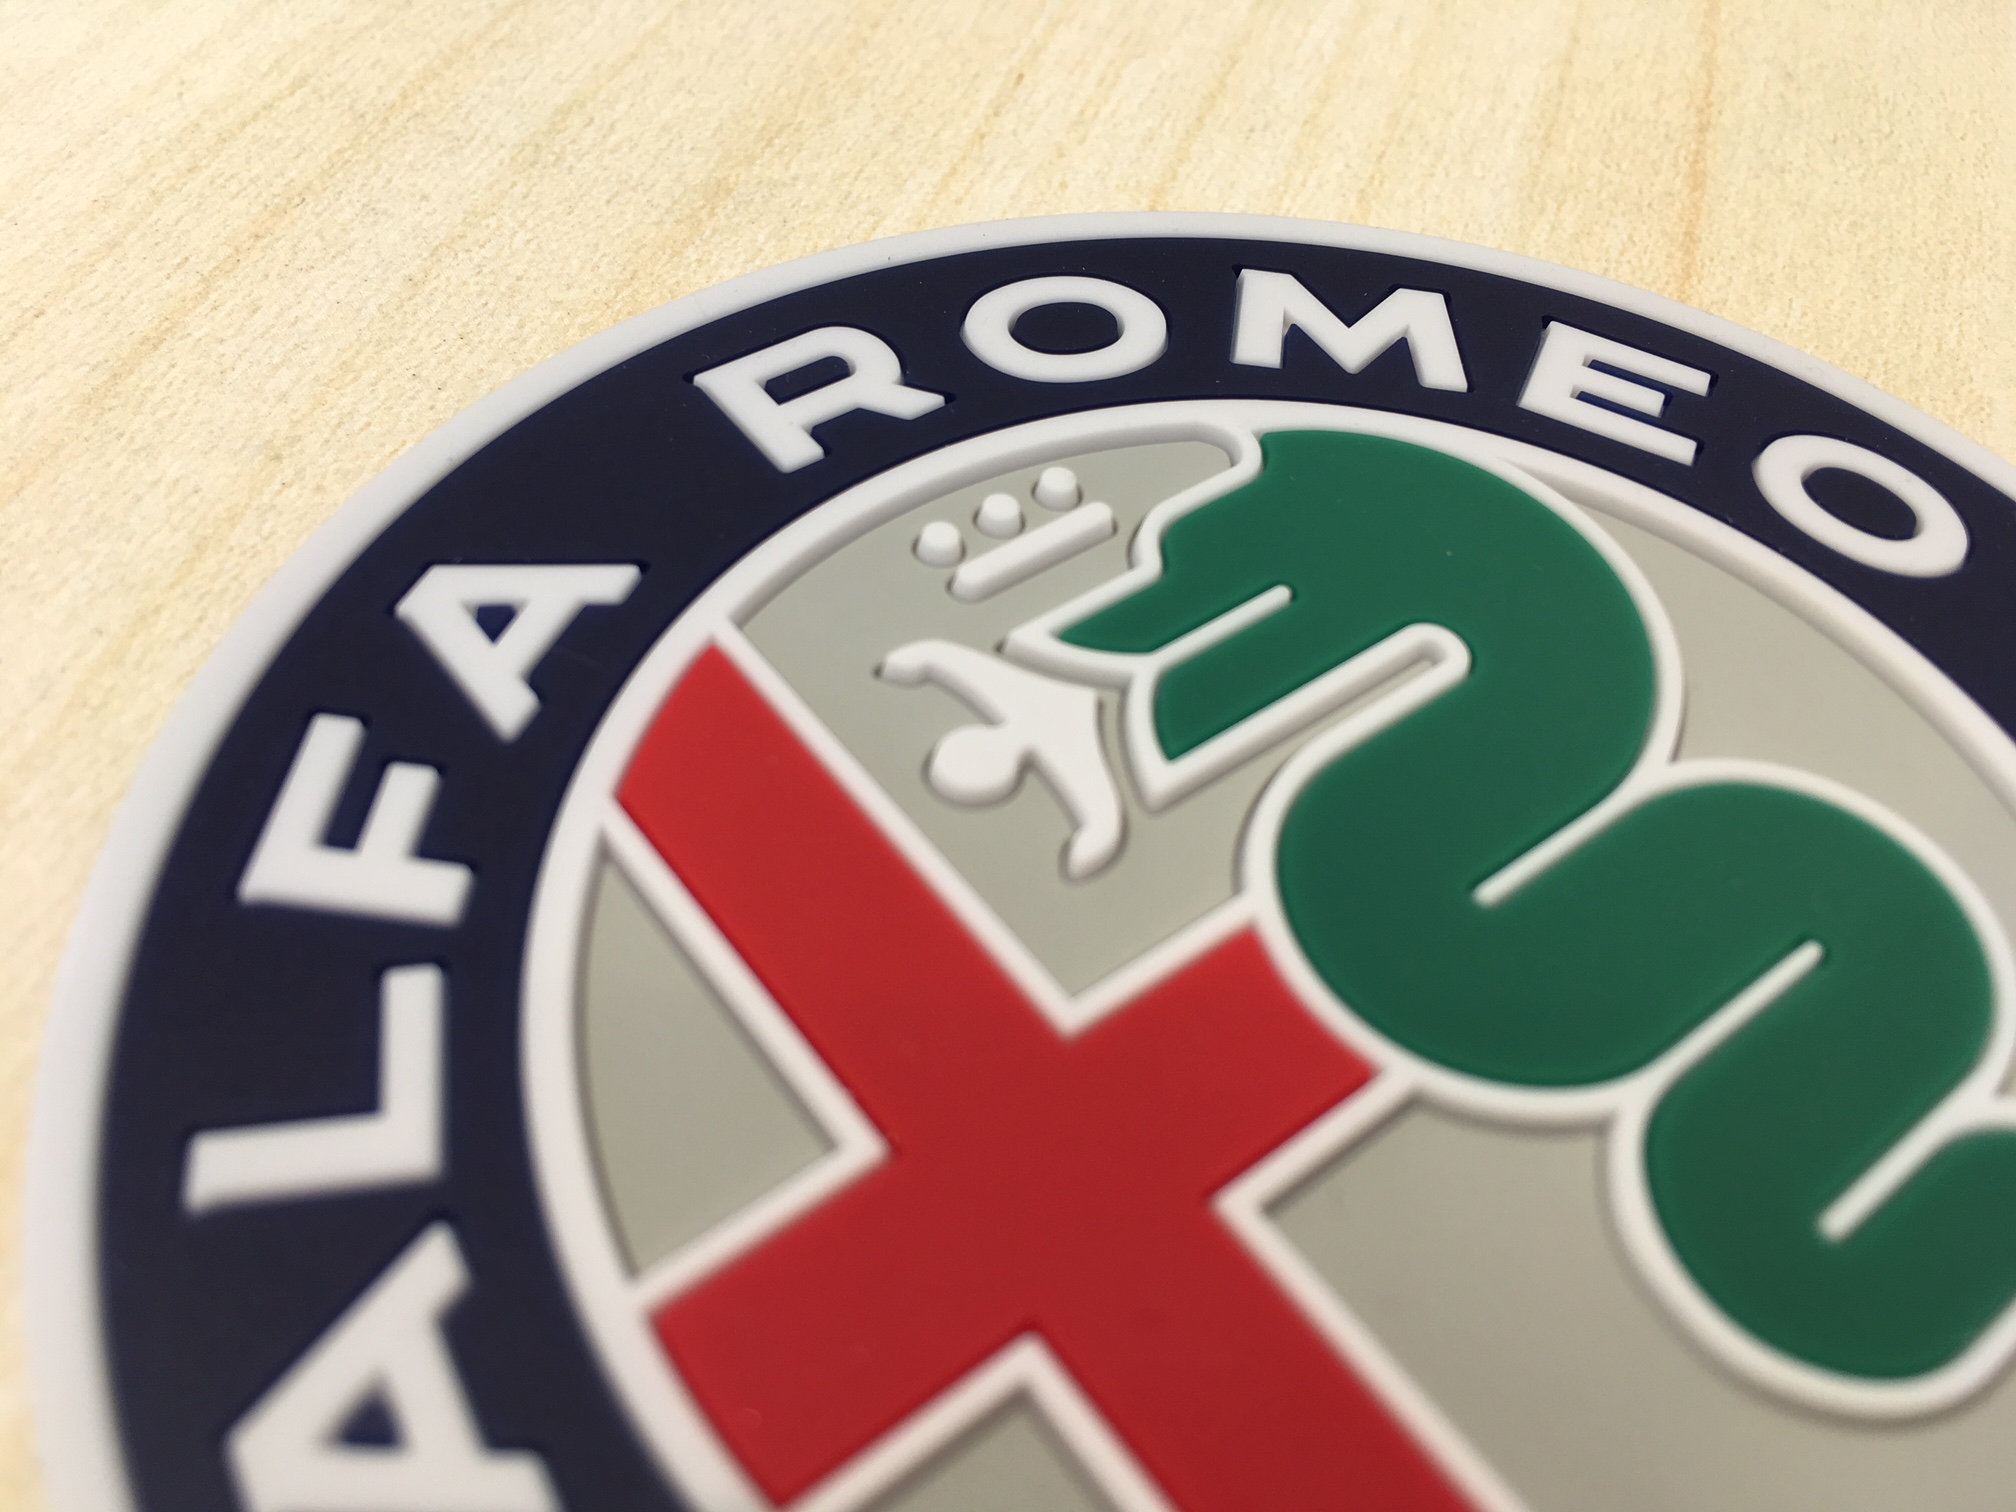 Alfa Romeo NEWエンブレムコースター(5枚セット)